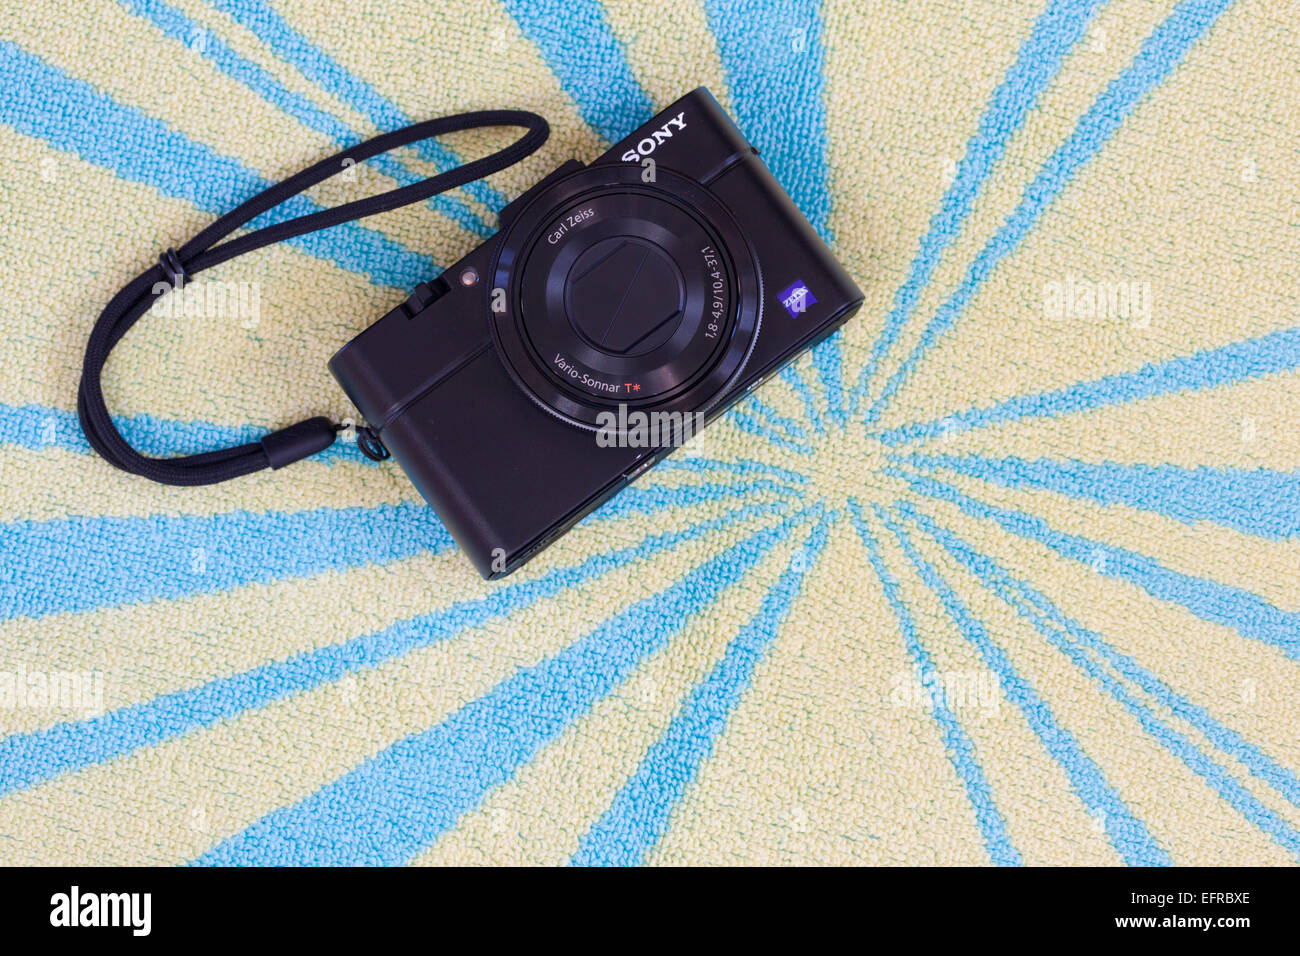 Digitalkamera Sony RX100 II auf einem Strandtuch Stockfoto